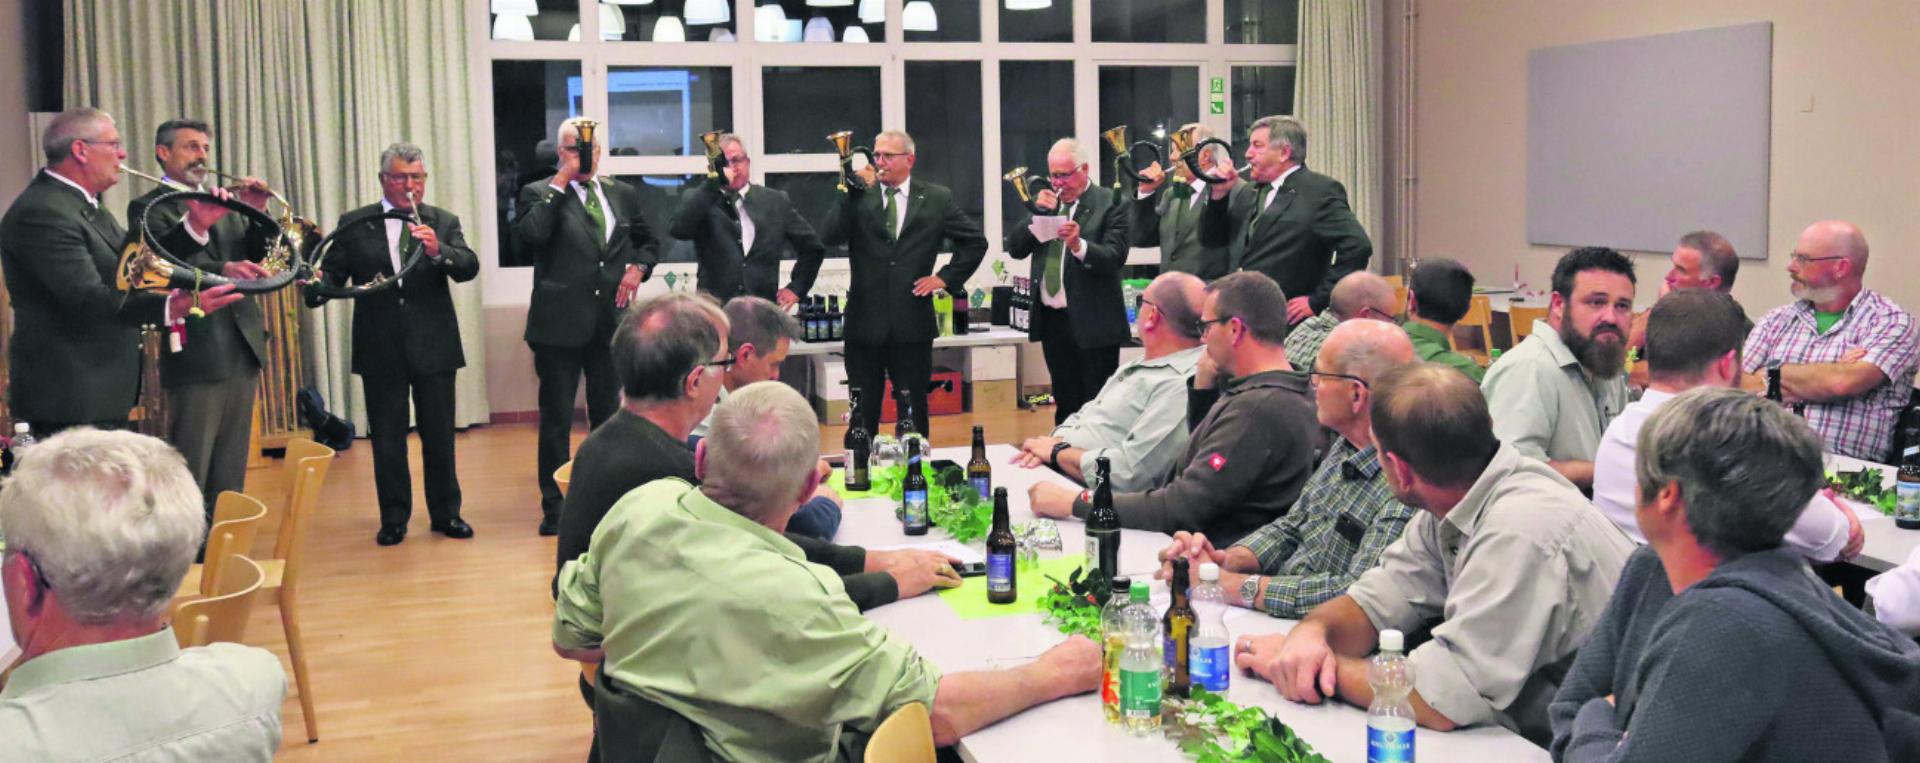 Die Jagdhornbläsergruppe «Freiämter Dachse» umrahmte die Versammlung musikalisch. Fotos: eh